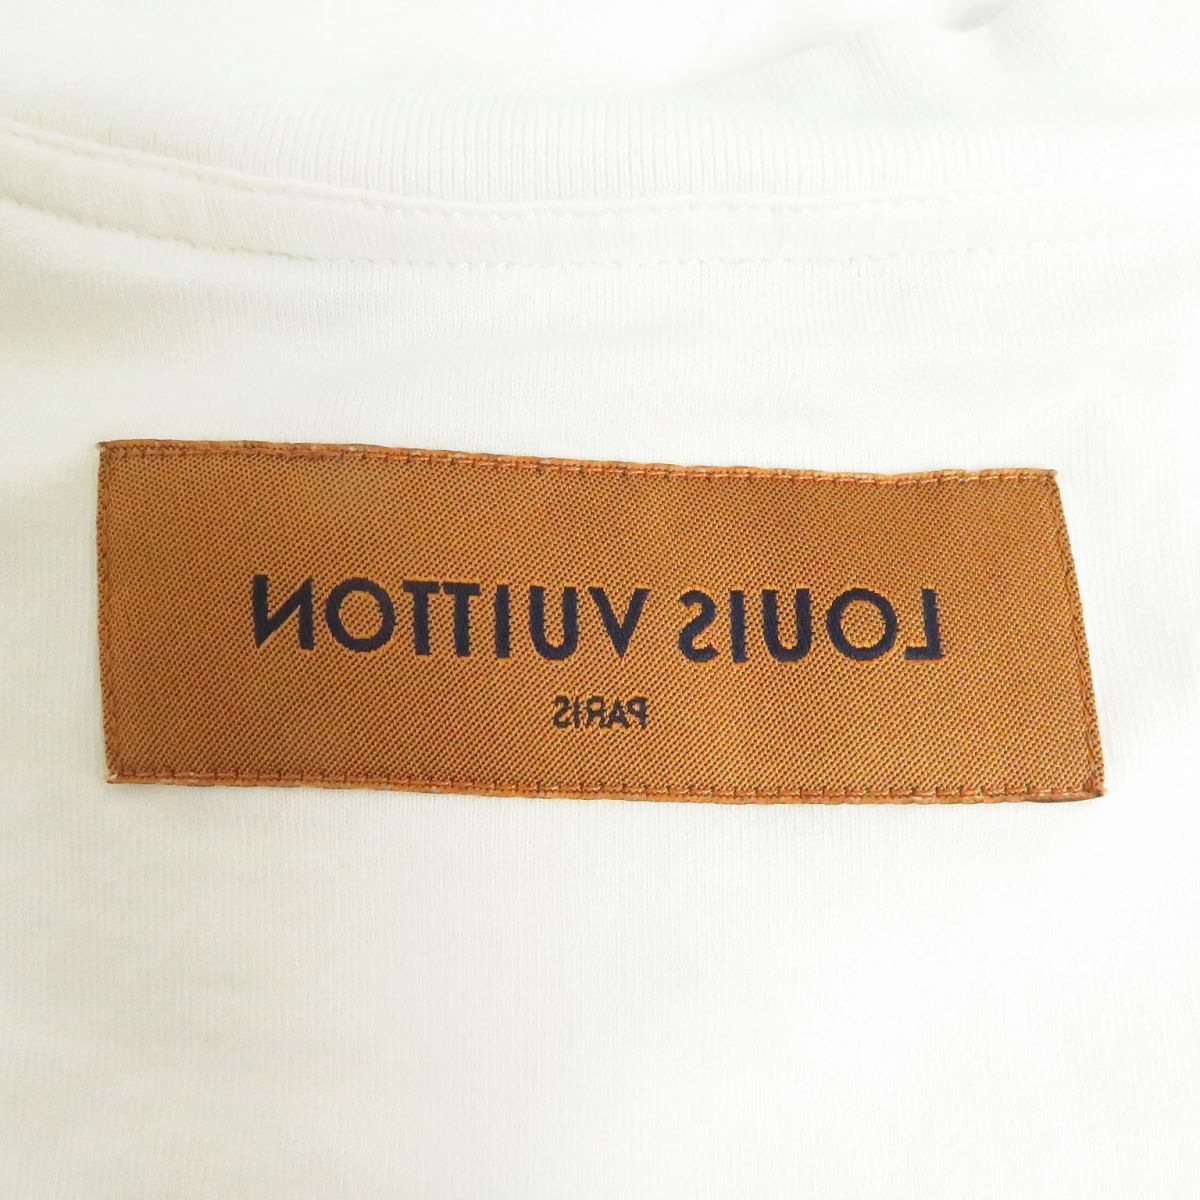 良品□21SS ルイヴィトン フロウティング LV プリンテッド インサイドアウト クルーネック 半袖Tシャツ ホワイト S イタリア製 正規品